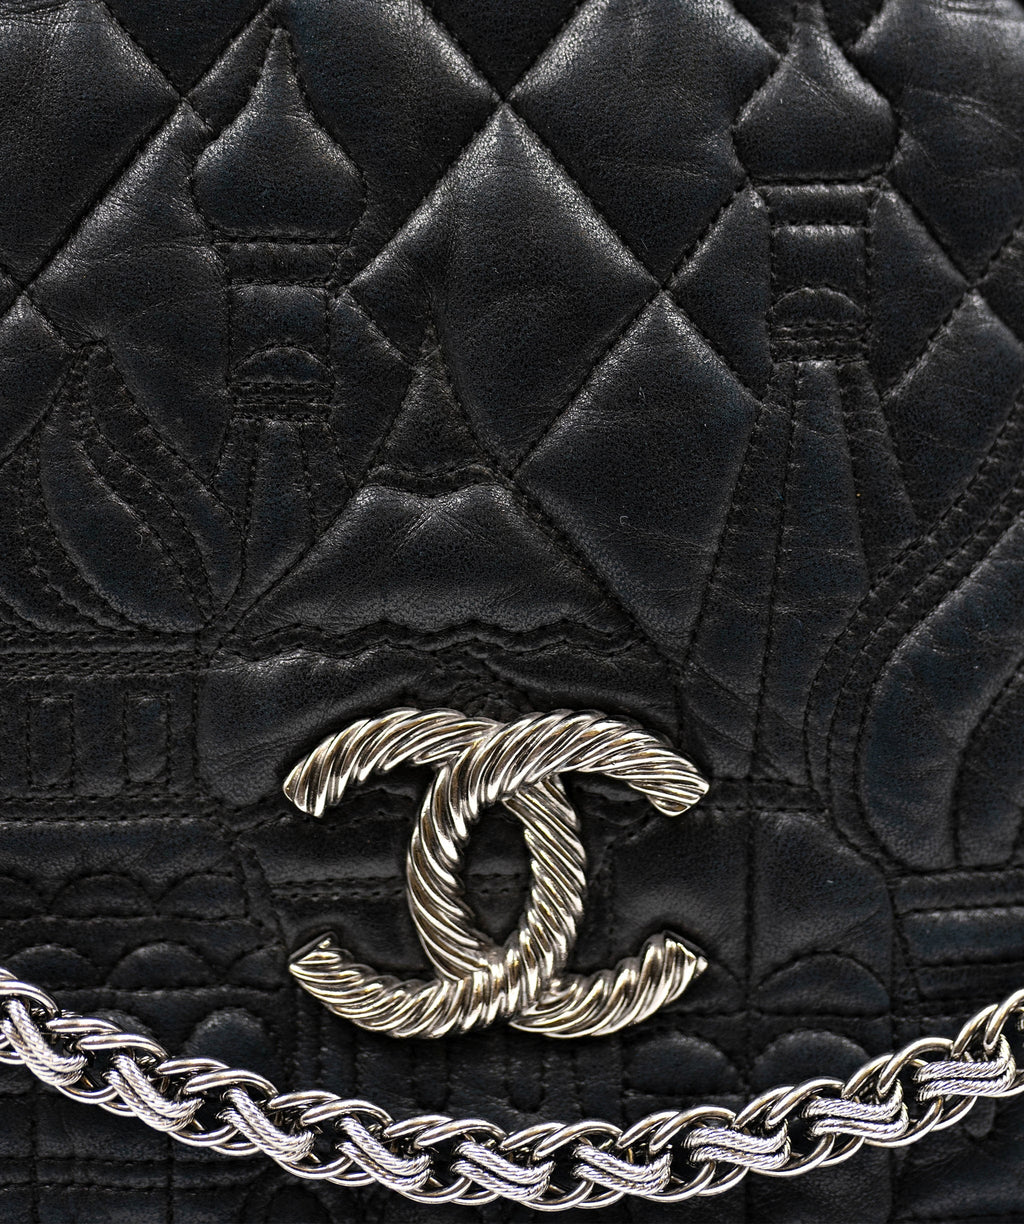 Chanel Paris-Moscow Red Square Kremlin Large Shoulder Bag